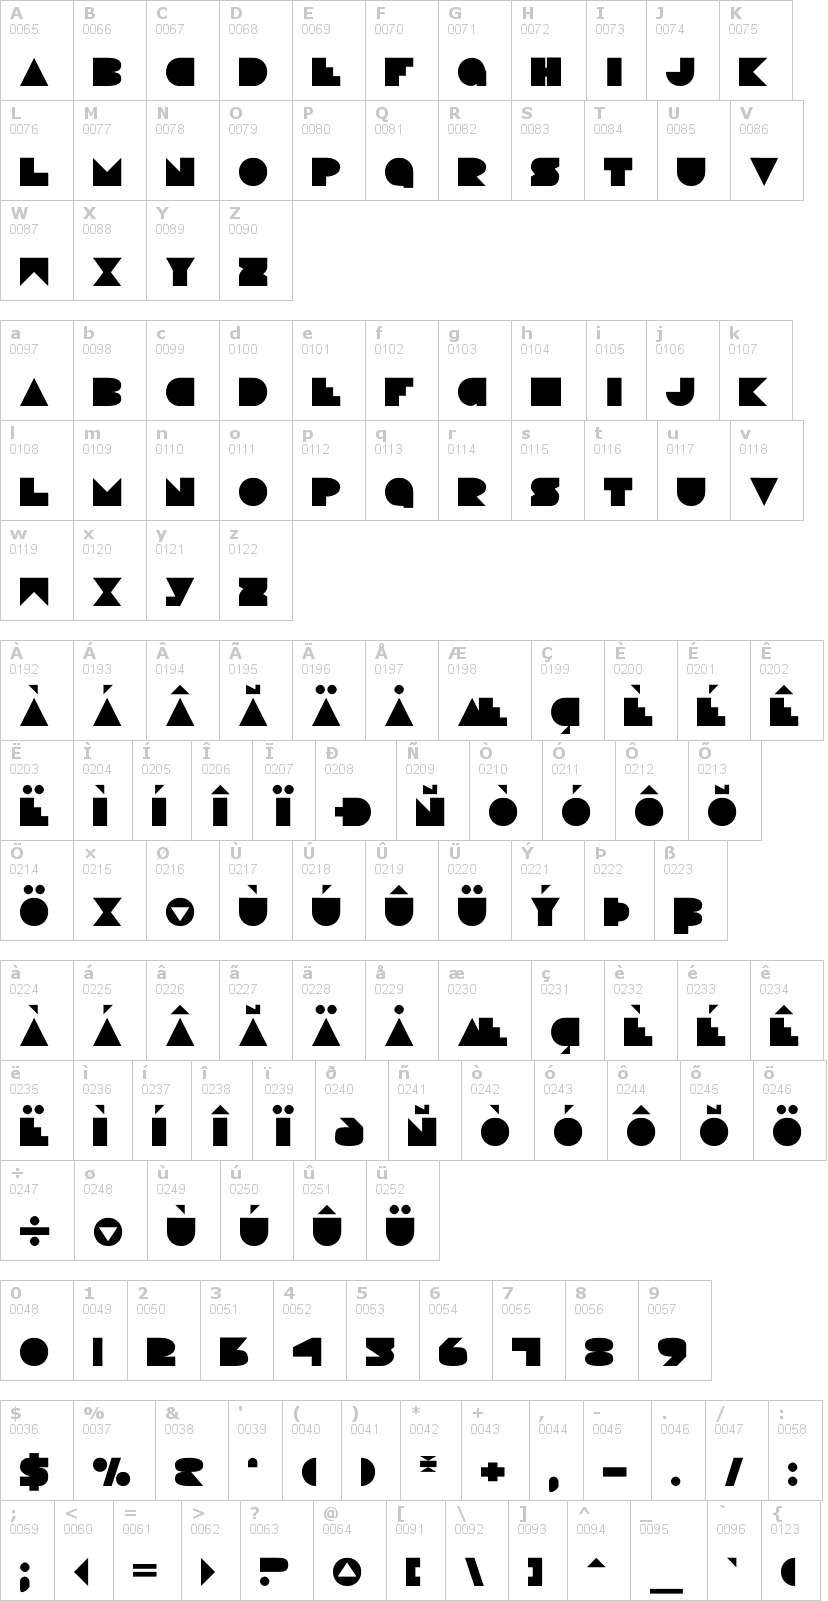 Lettere dell'alfabeto del font disco-deck con le quali è possibile realizzare adesivi prespaziati